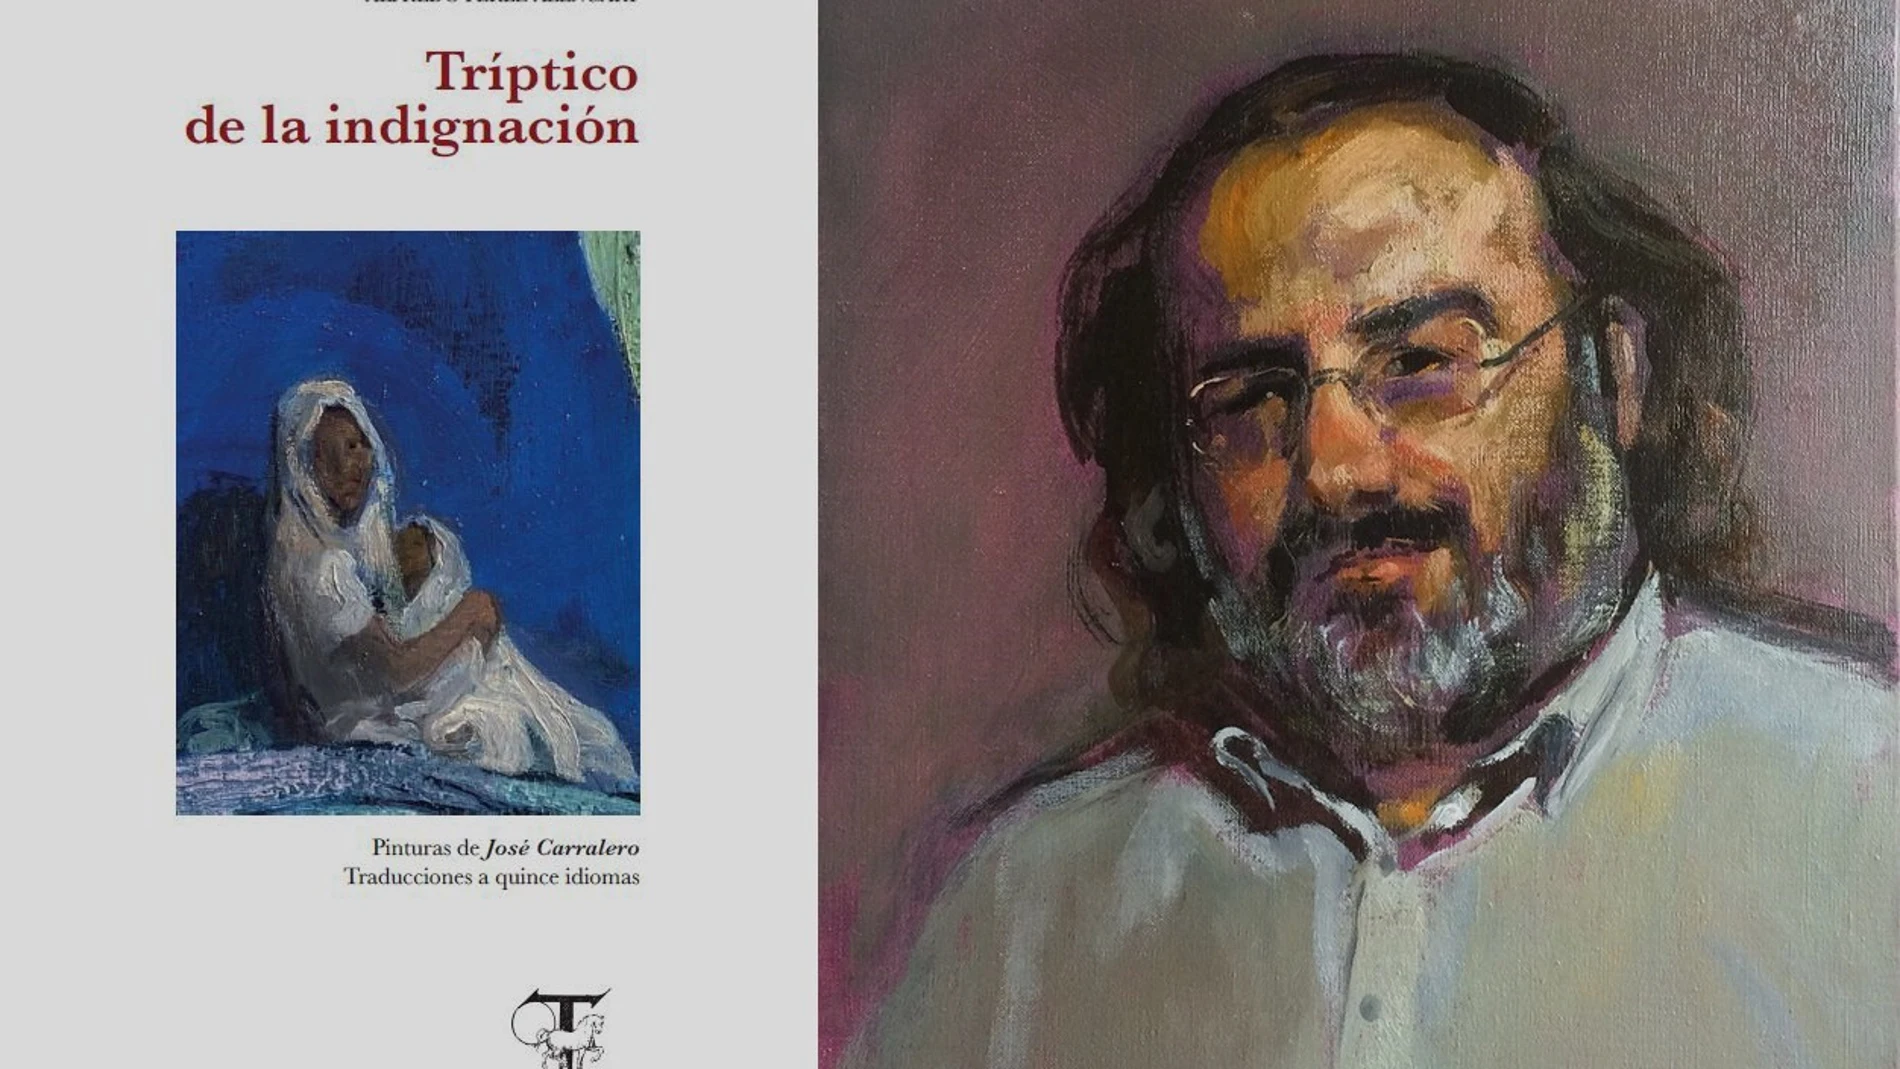 Portada del libro "Tríptico de la indignación" y retrato de Alfredo Pérez Alencart